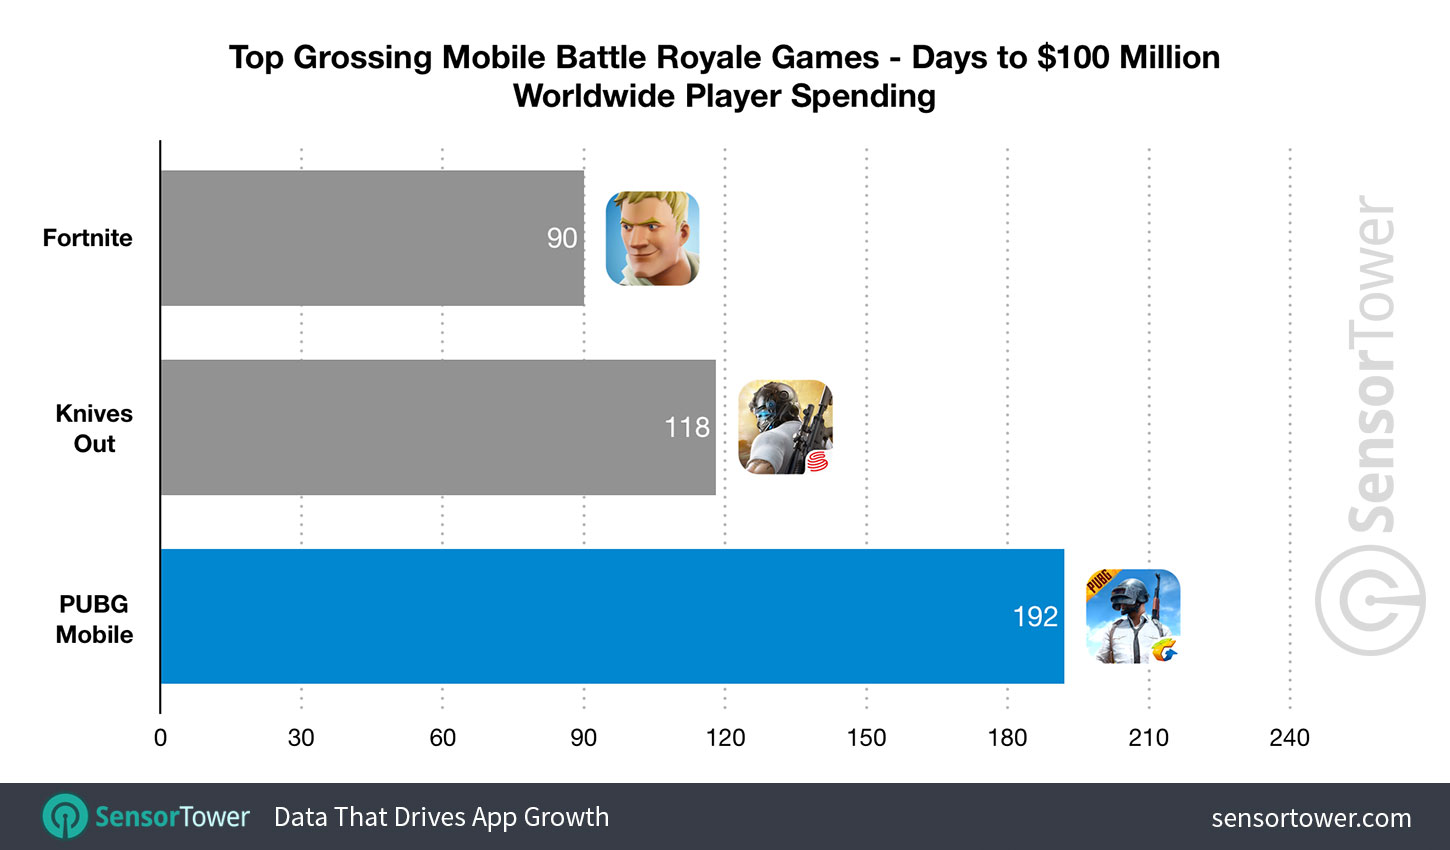 PUBG Mobile officially crosses $5 billion in player spending